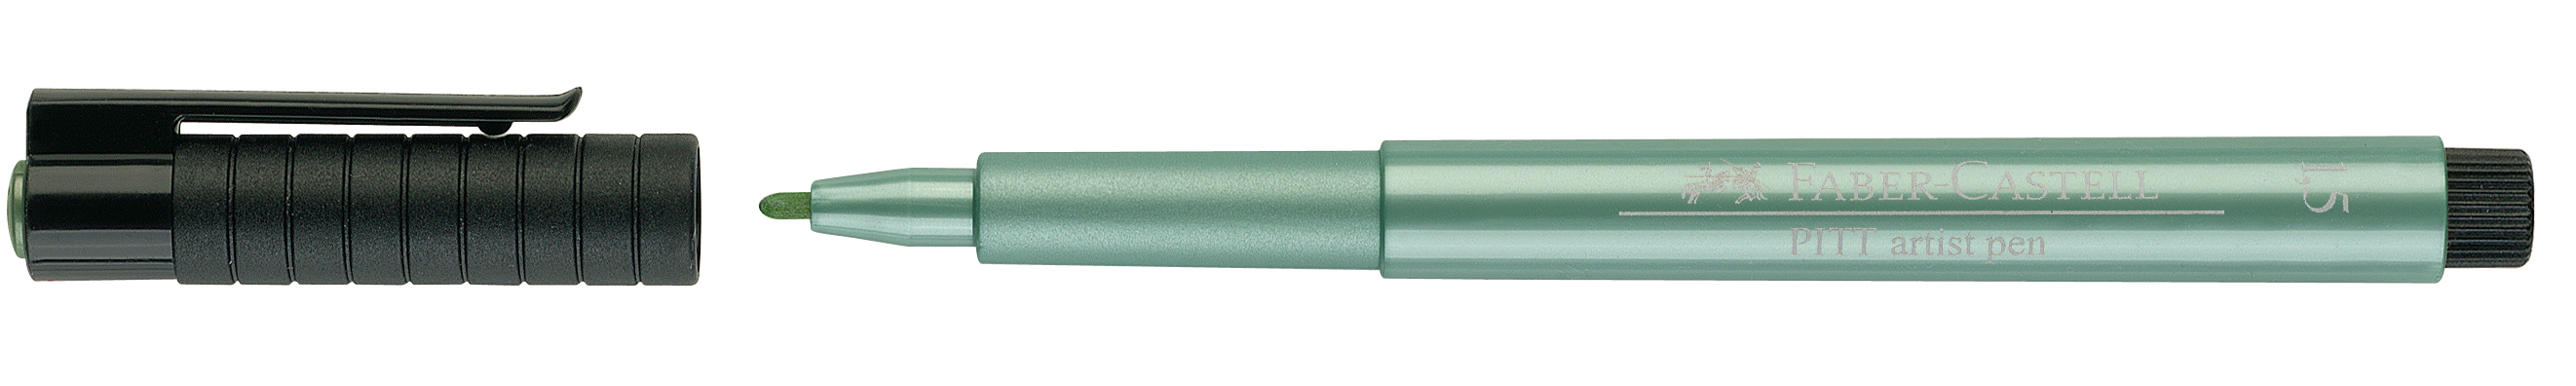 FABER-CASTELL Pitt Artist Pen 1,5mm 167394 vert